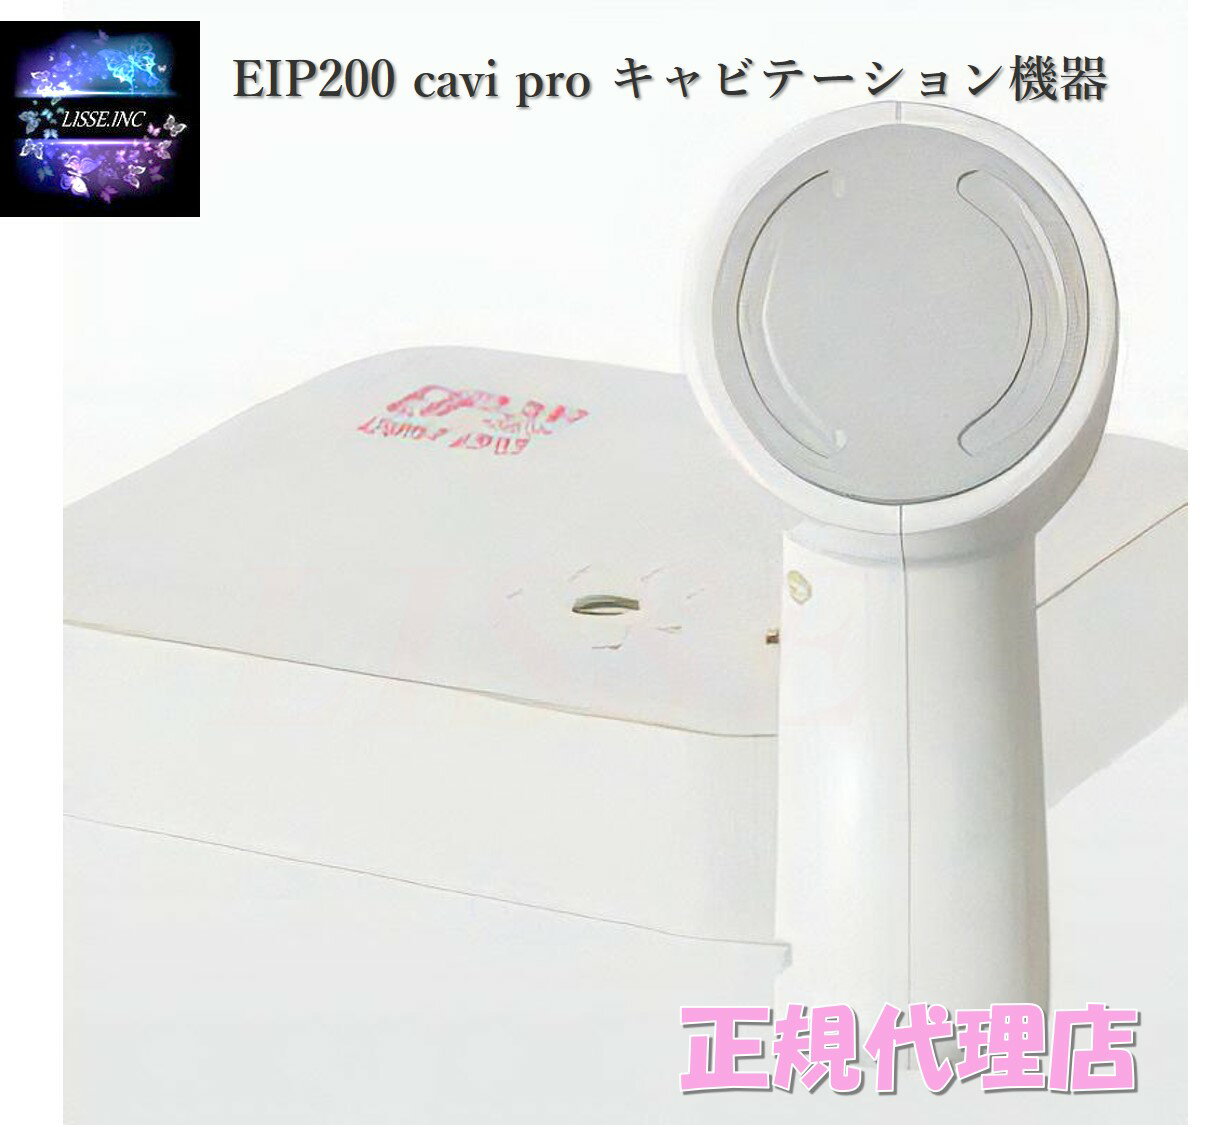 EIP200 cavi pro キャビテーション機器 エンチーム EIP 200 キャビ プロ 超音波 キャビテーション 脂肪 美容 美容機器 正規代理店